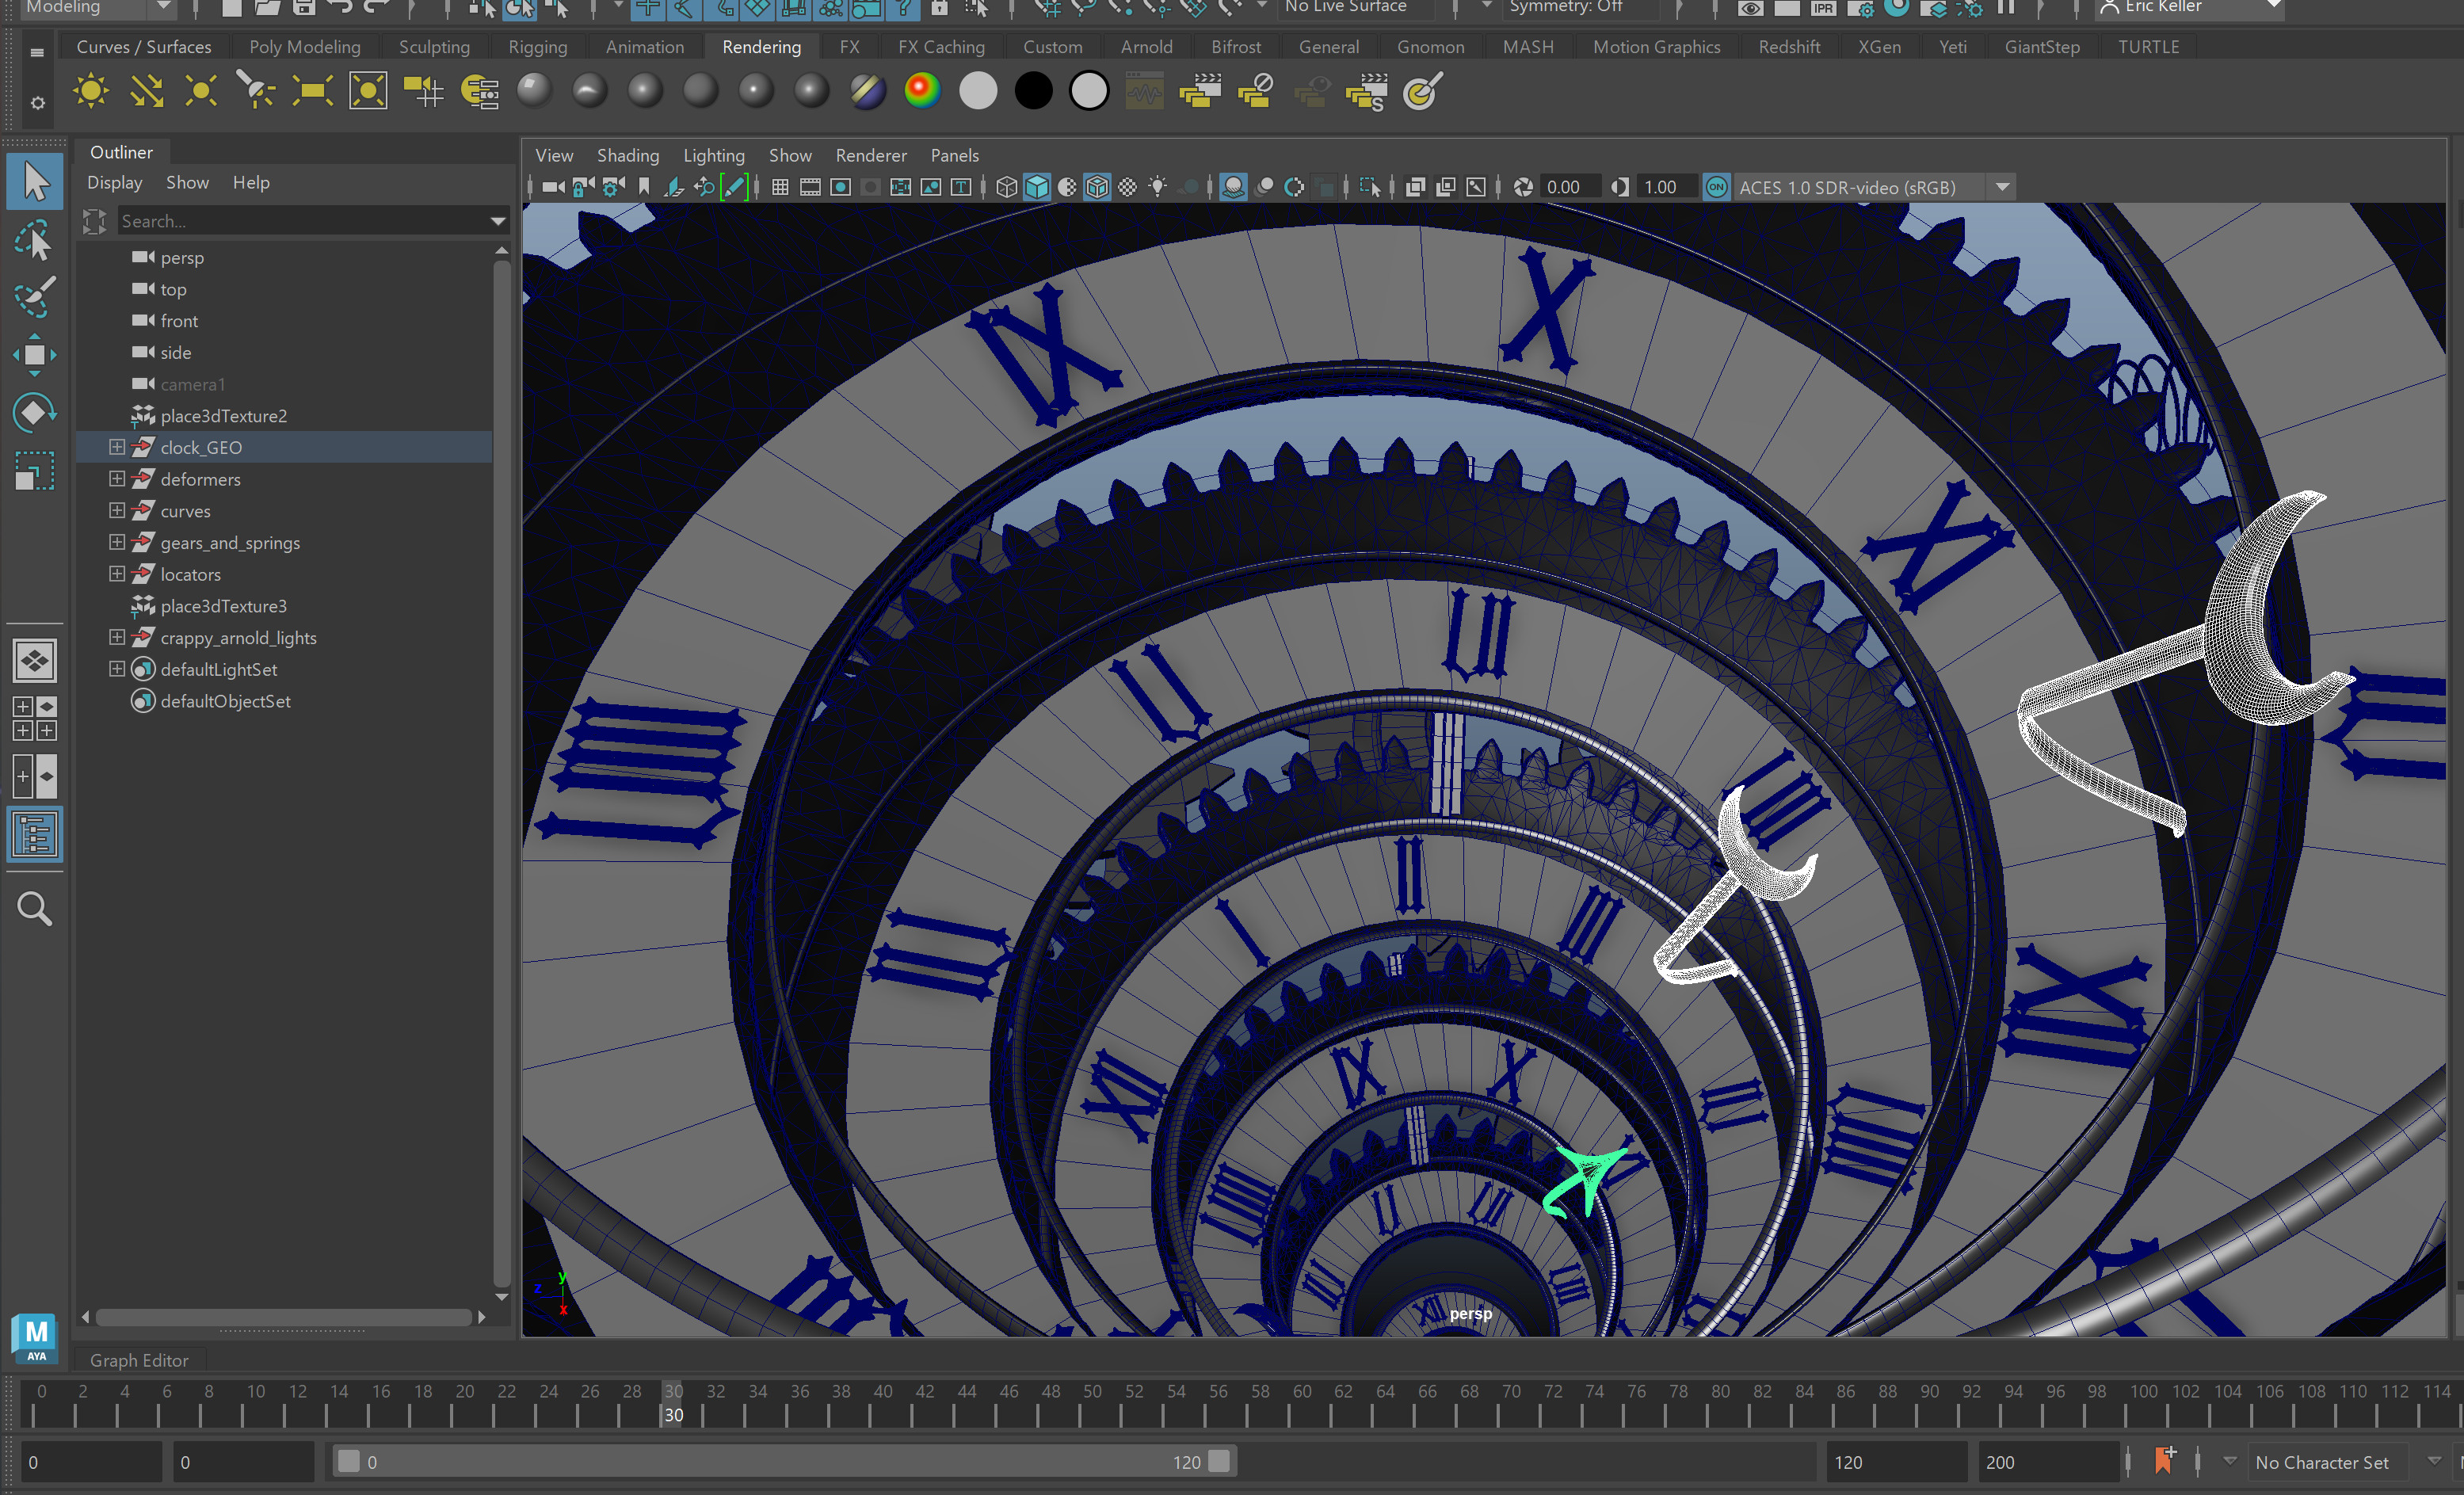 screen grab of the clock rig in Maya